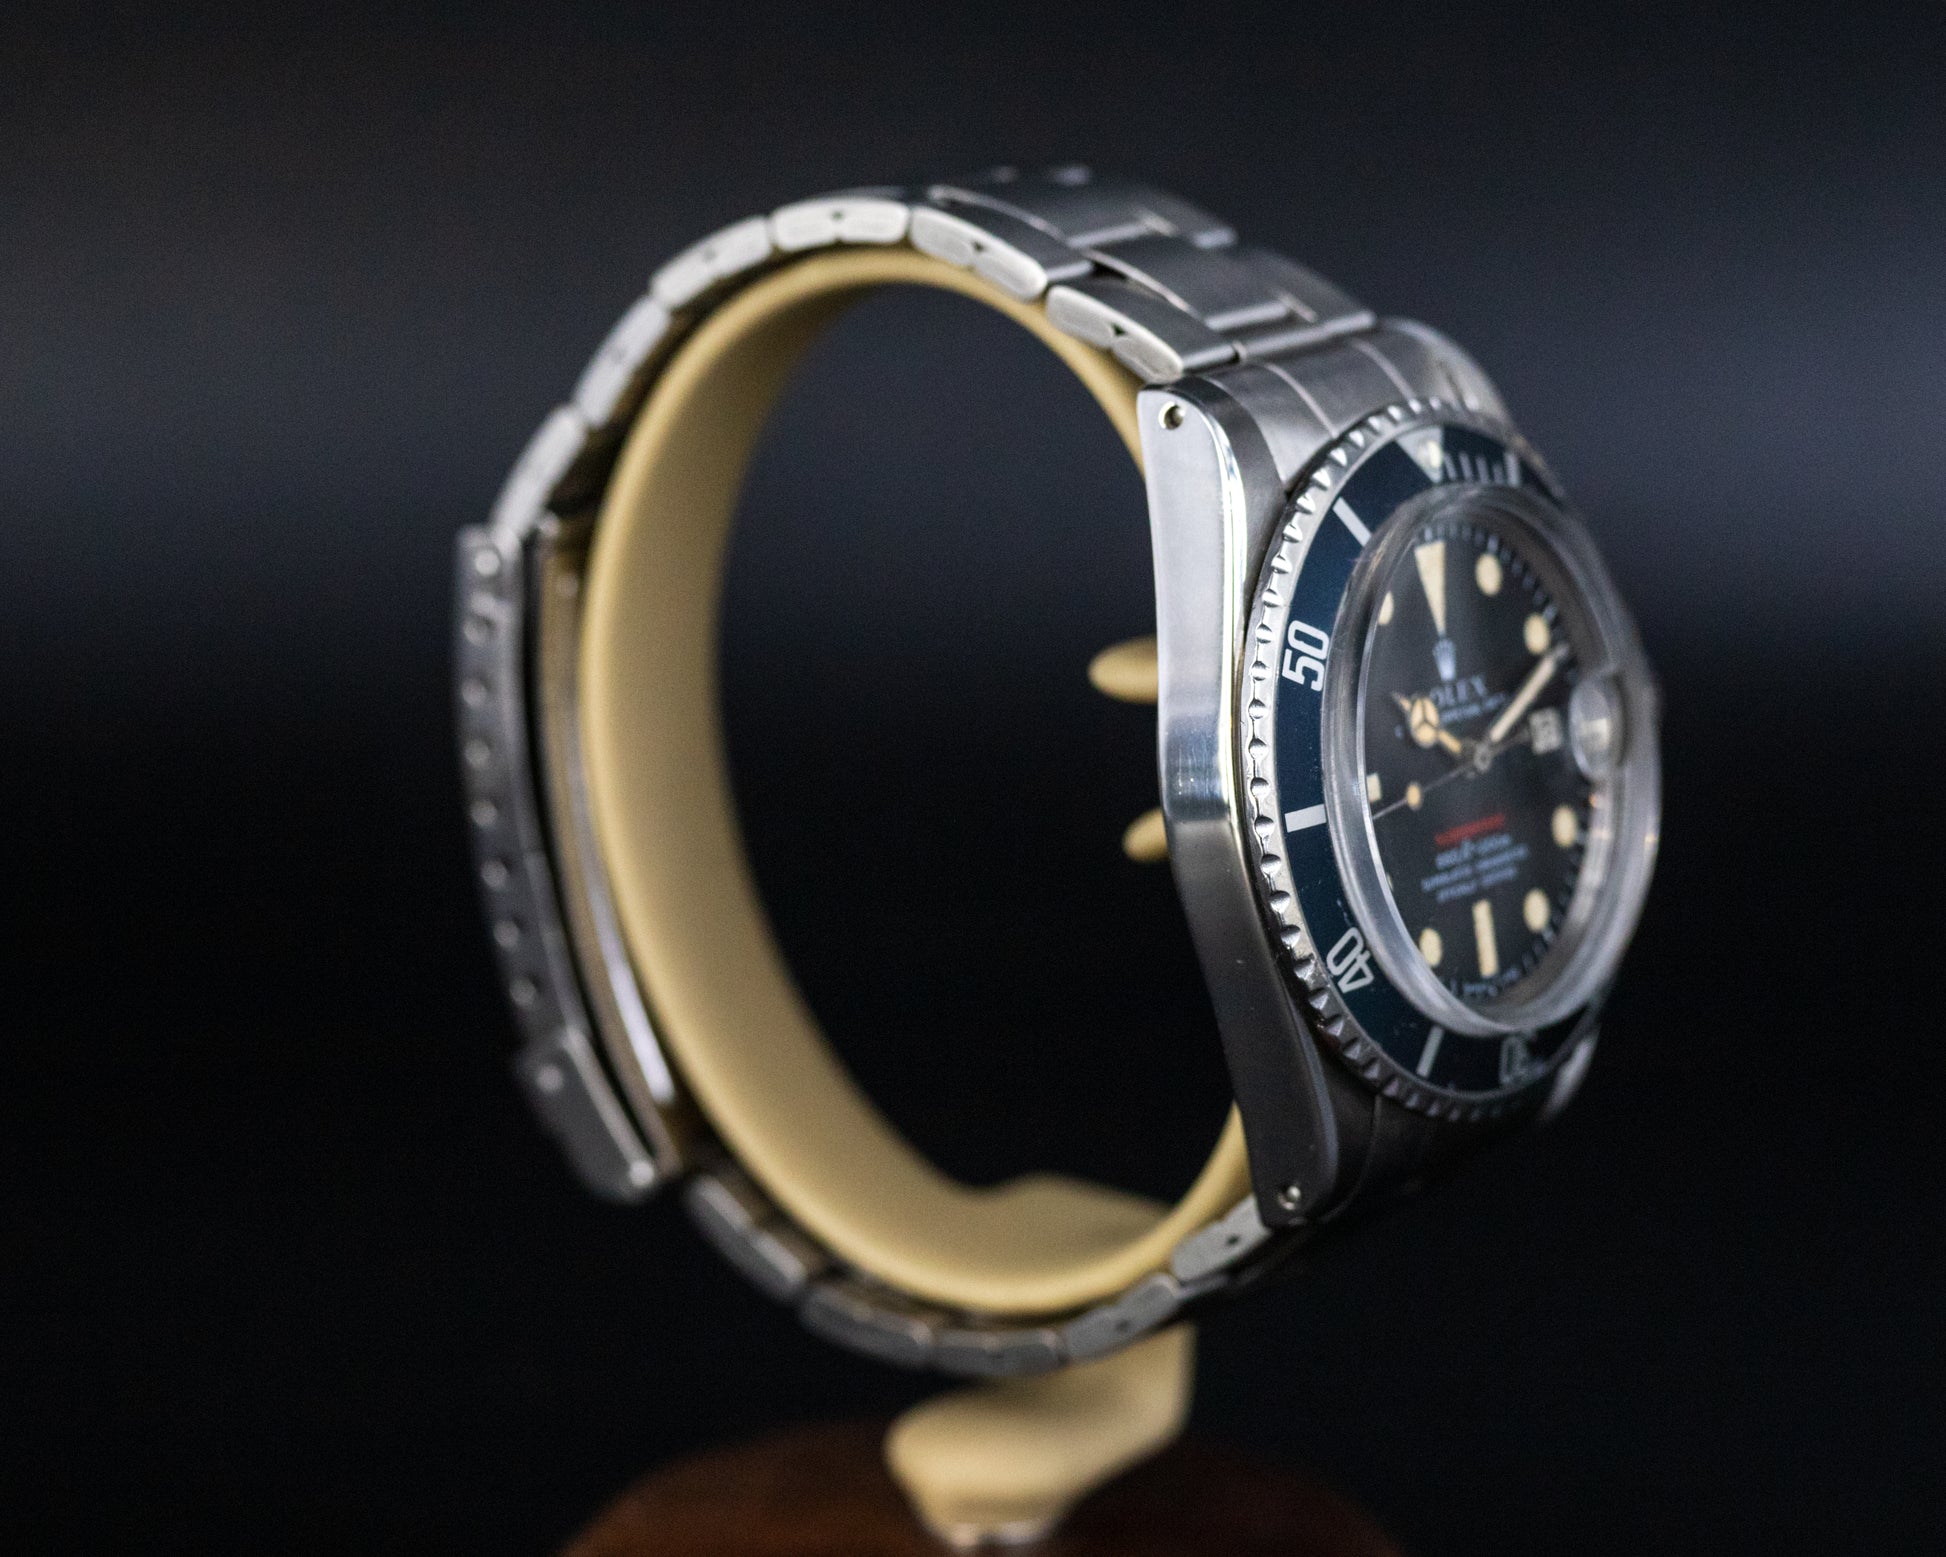 Rolex Submariner Date - L'Atelier du Temps